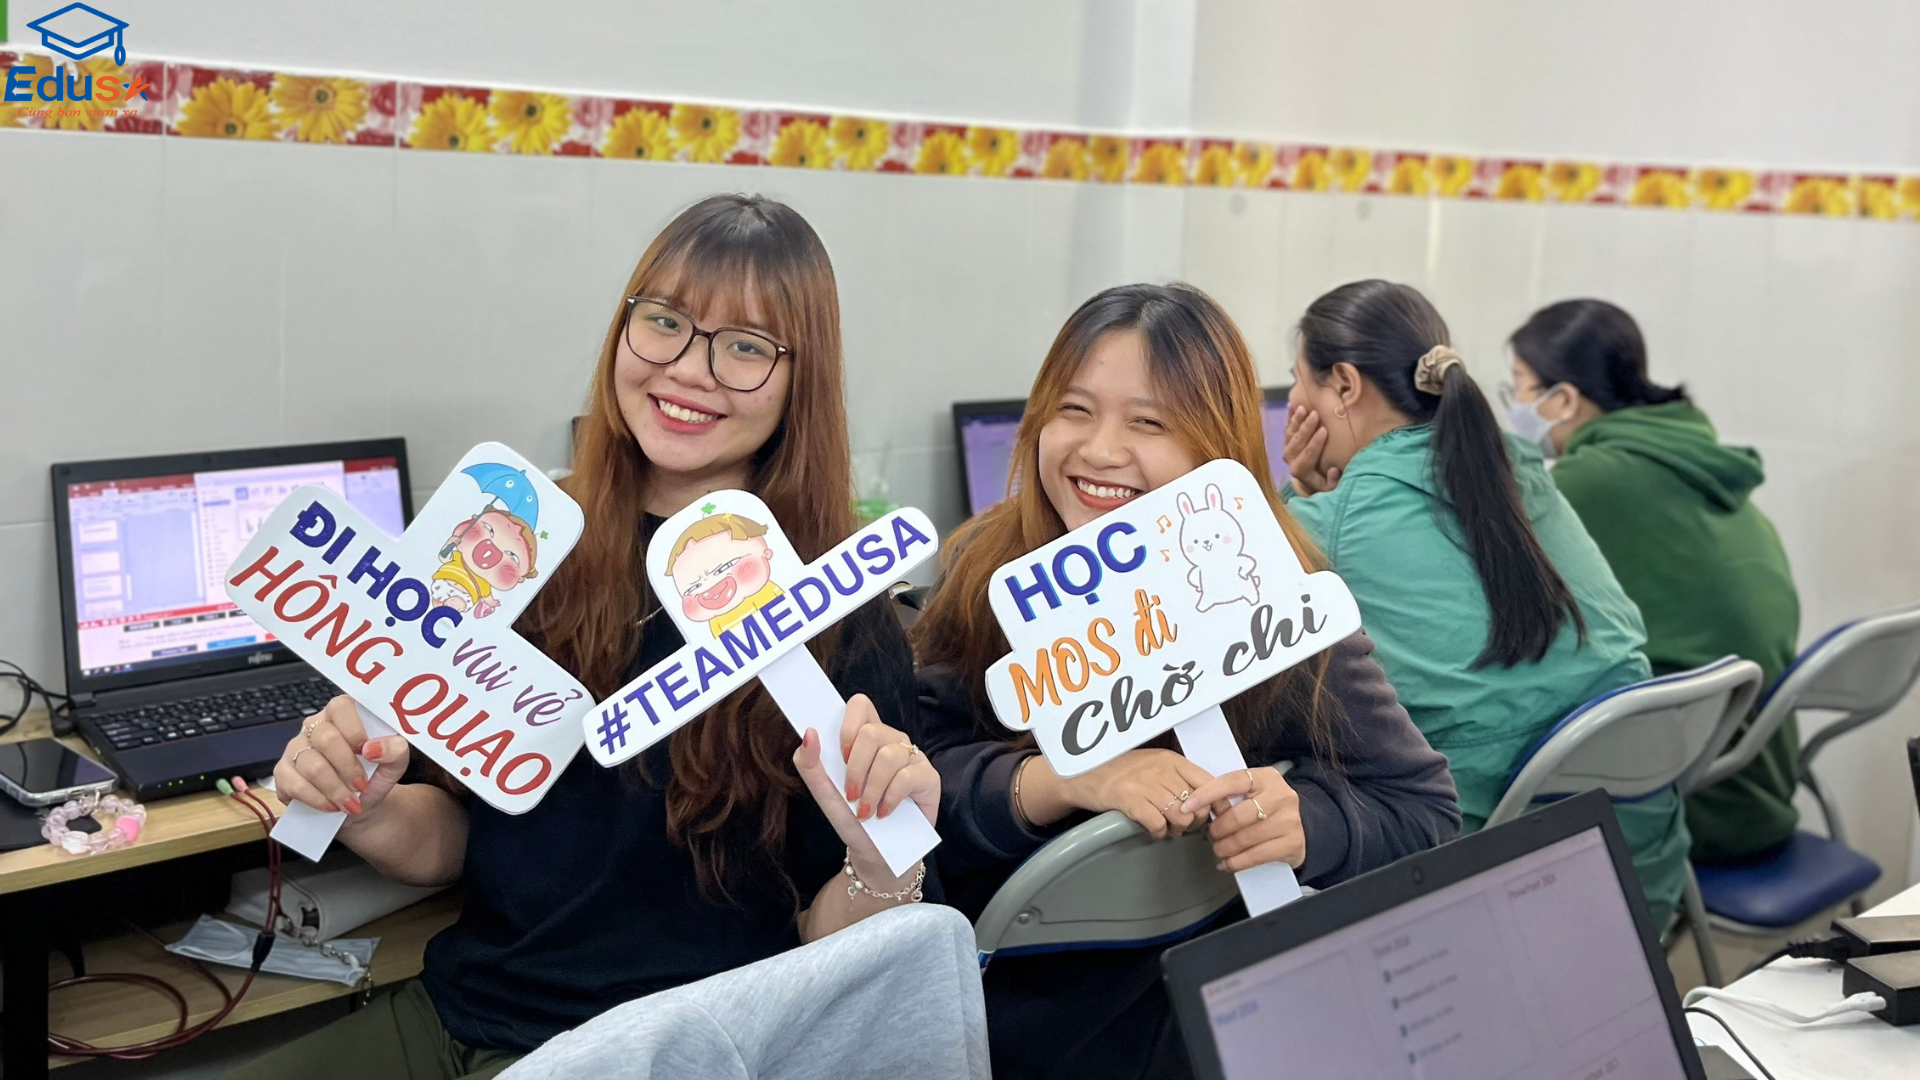 Trung tâm luyện thi chứng chỉ tin học cho sinh viên uy tín hàng đầu Việt Nam - EDUSA